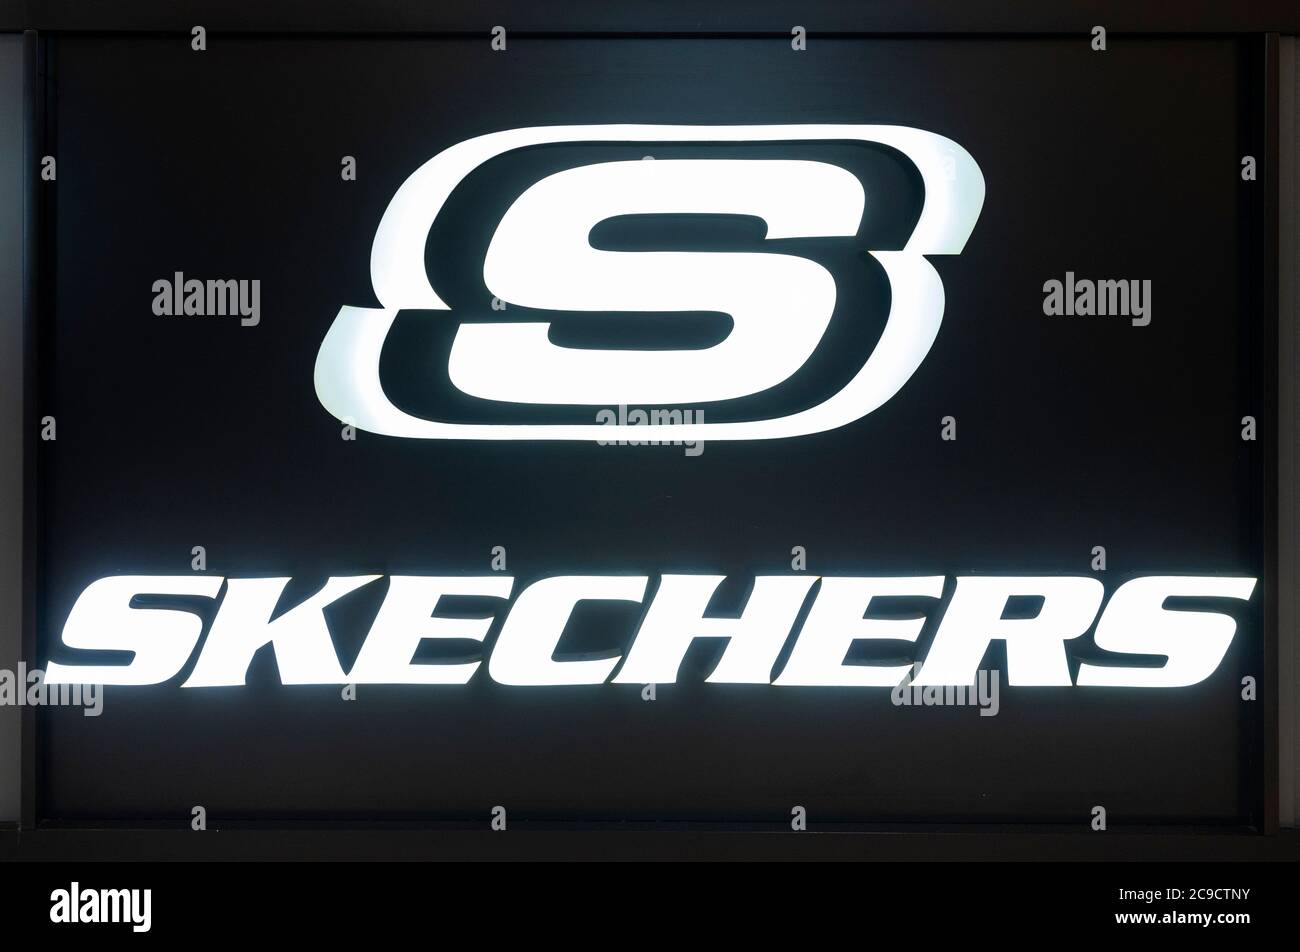 Logo De Skechers Et Avant De Signe De Texte De Note De Magasin De ...